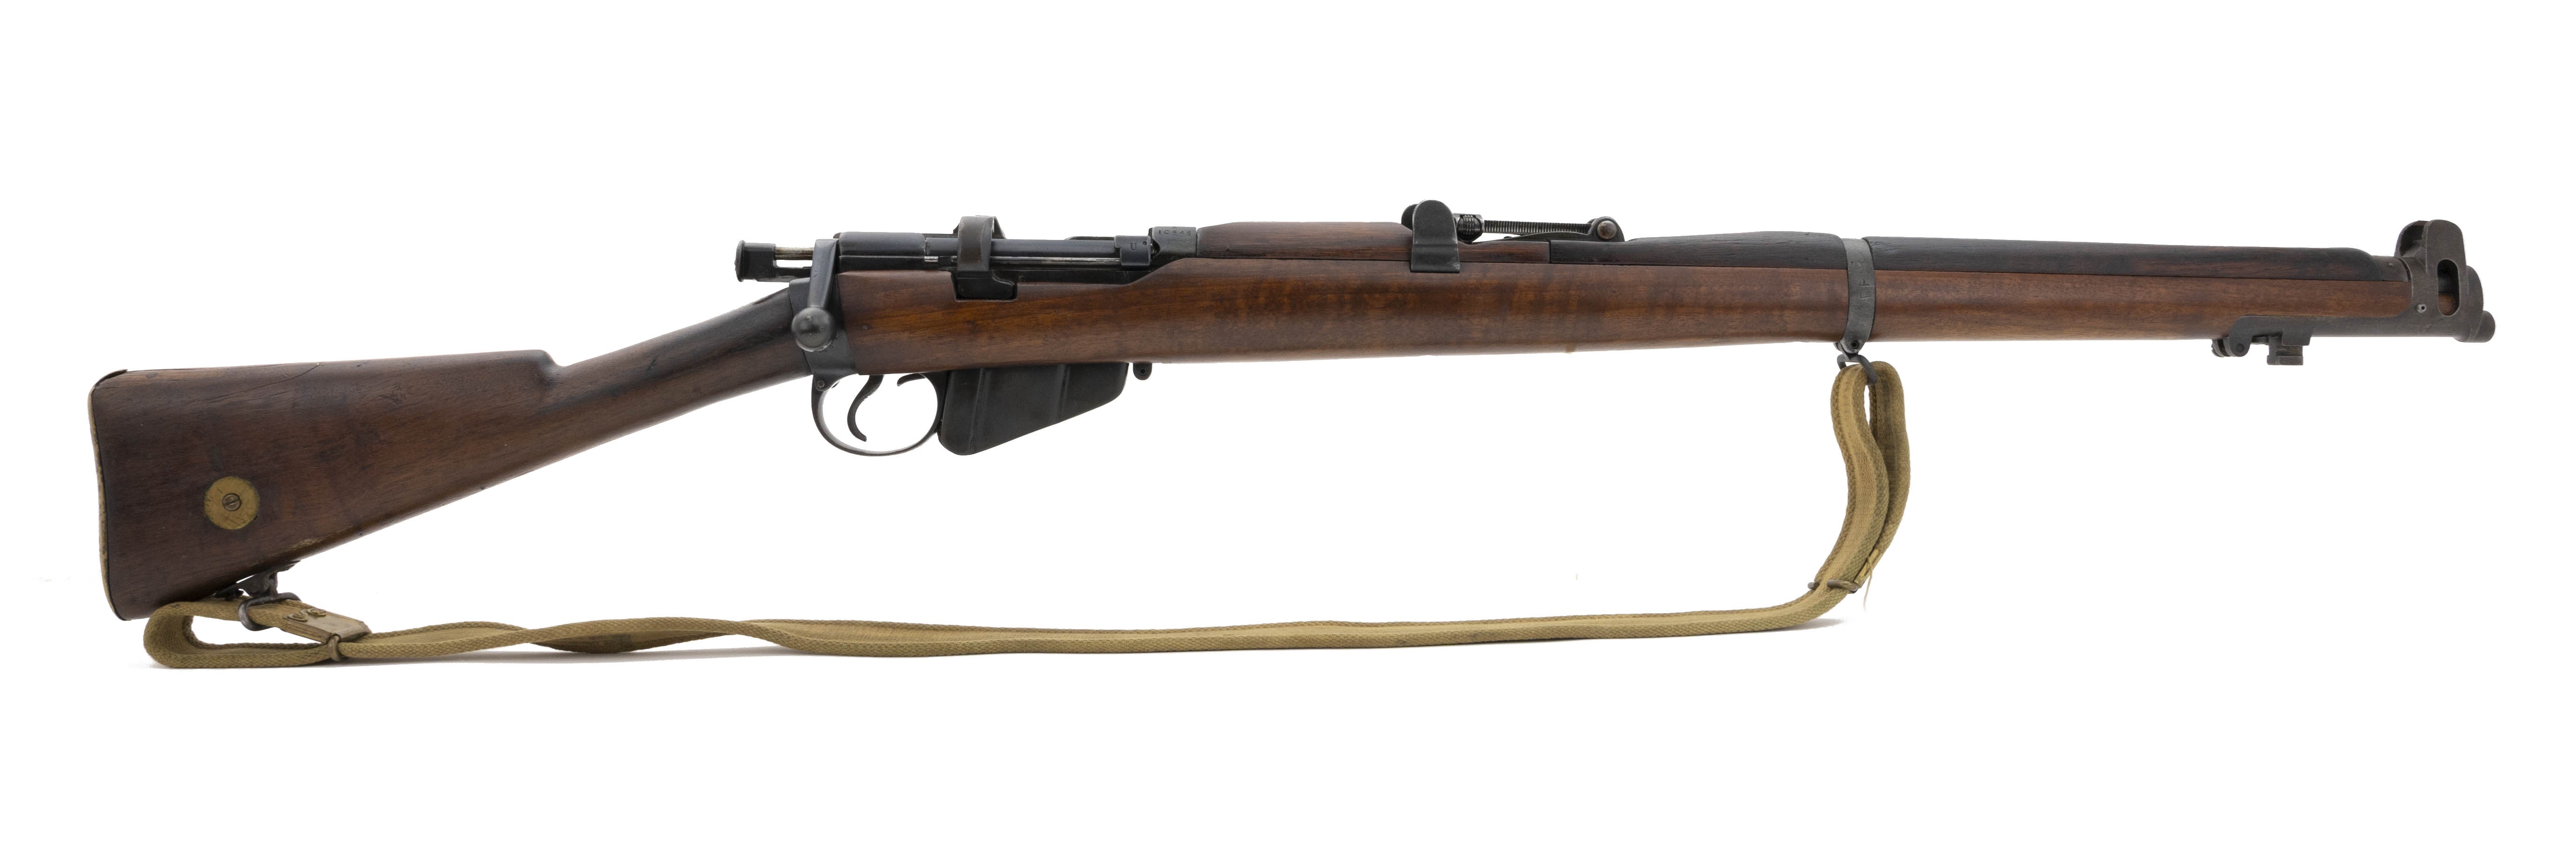 ww2-british-303-rifle